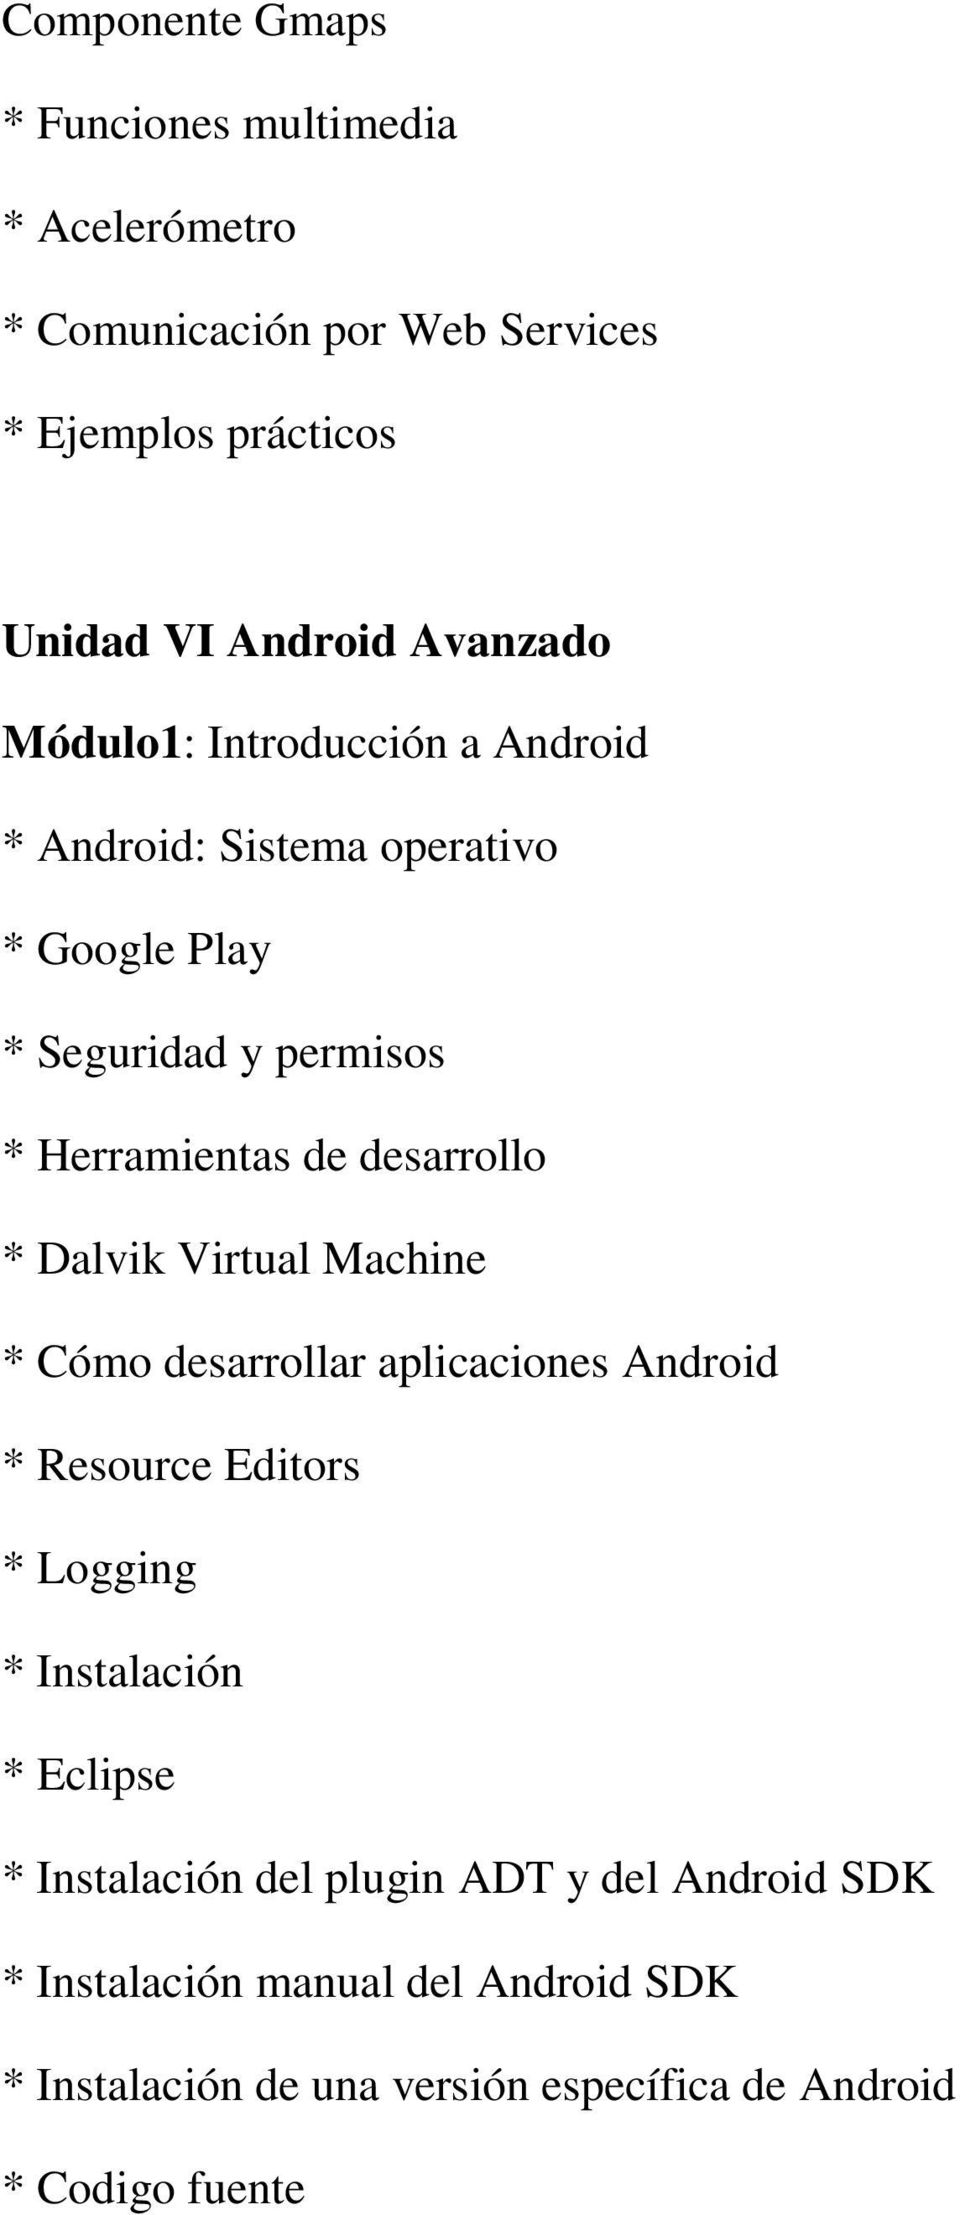 desarrollo * Dalvik Virtual Machine * Cómo desarrollar aplicaciones Android * Resource Editors * Logging * Instalación * Eclipse *